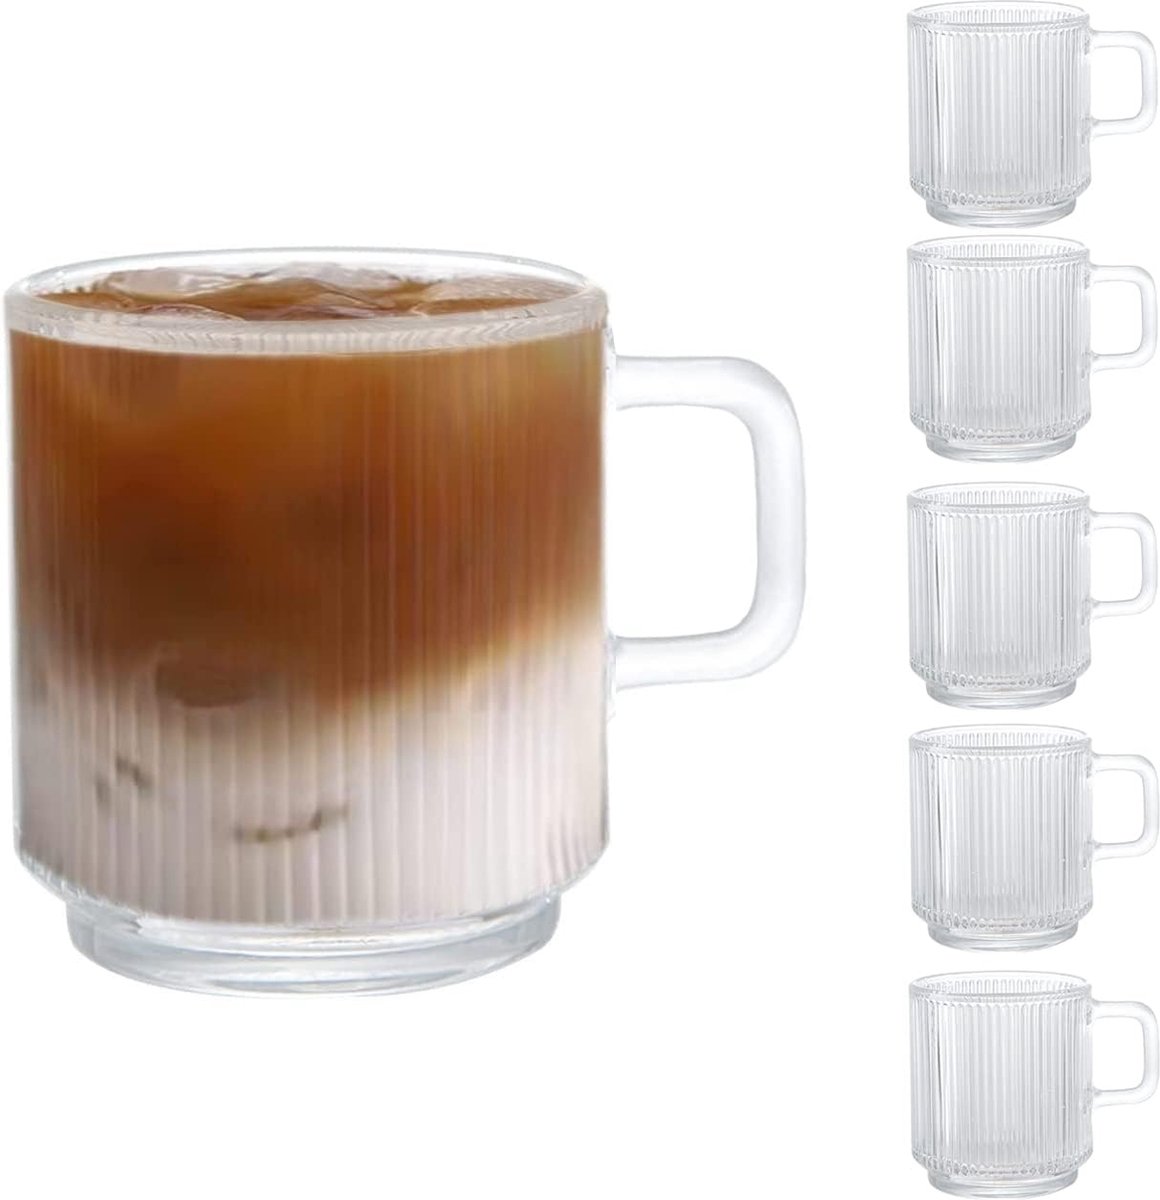 [6 PACK, 350ML] - Premium Glazen Koffiemokken met Handvat, Klassieke Verticale Strepen Thee Cup, Transparante Thee Glazen voor Warme/Koude Dranken.